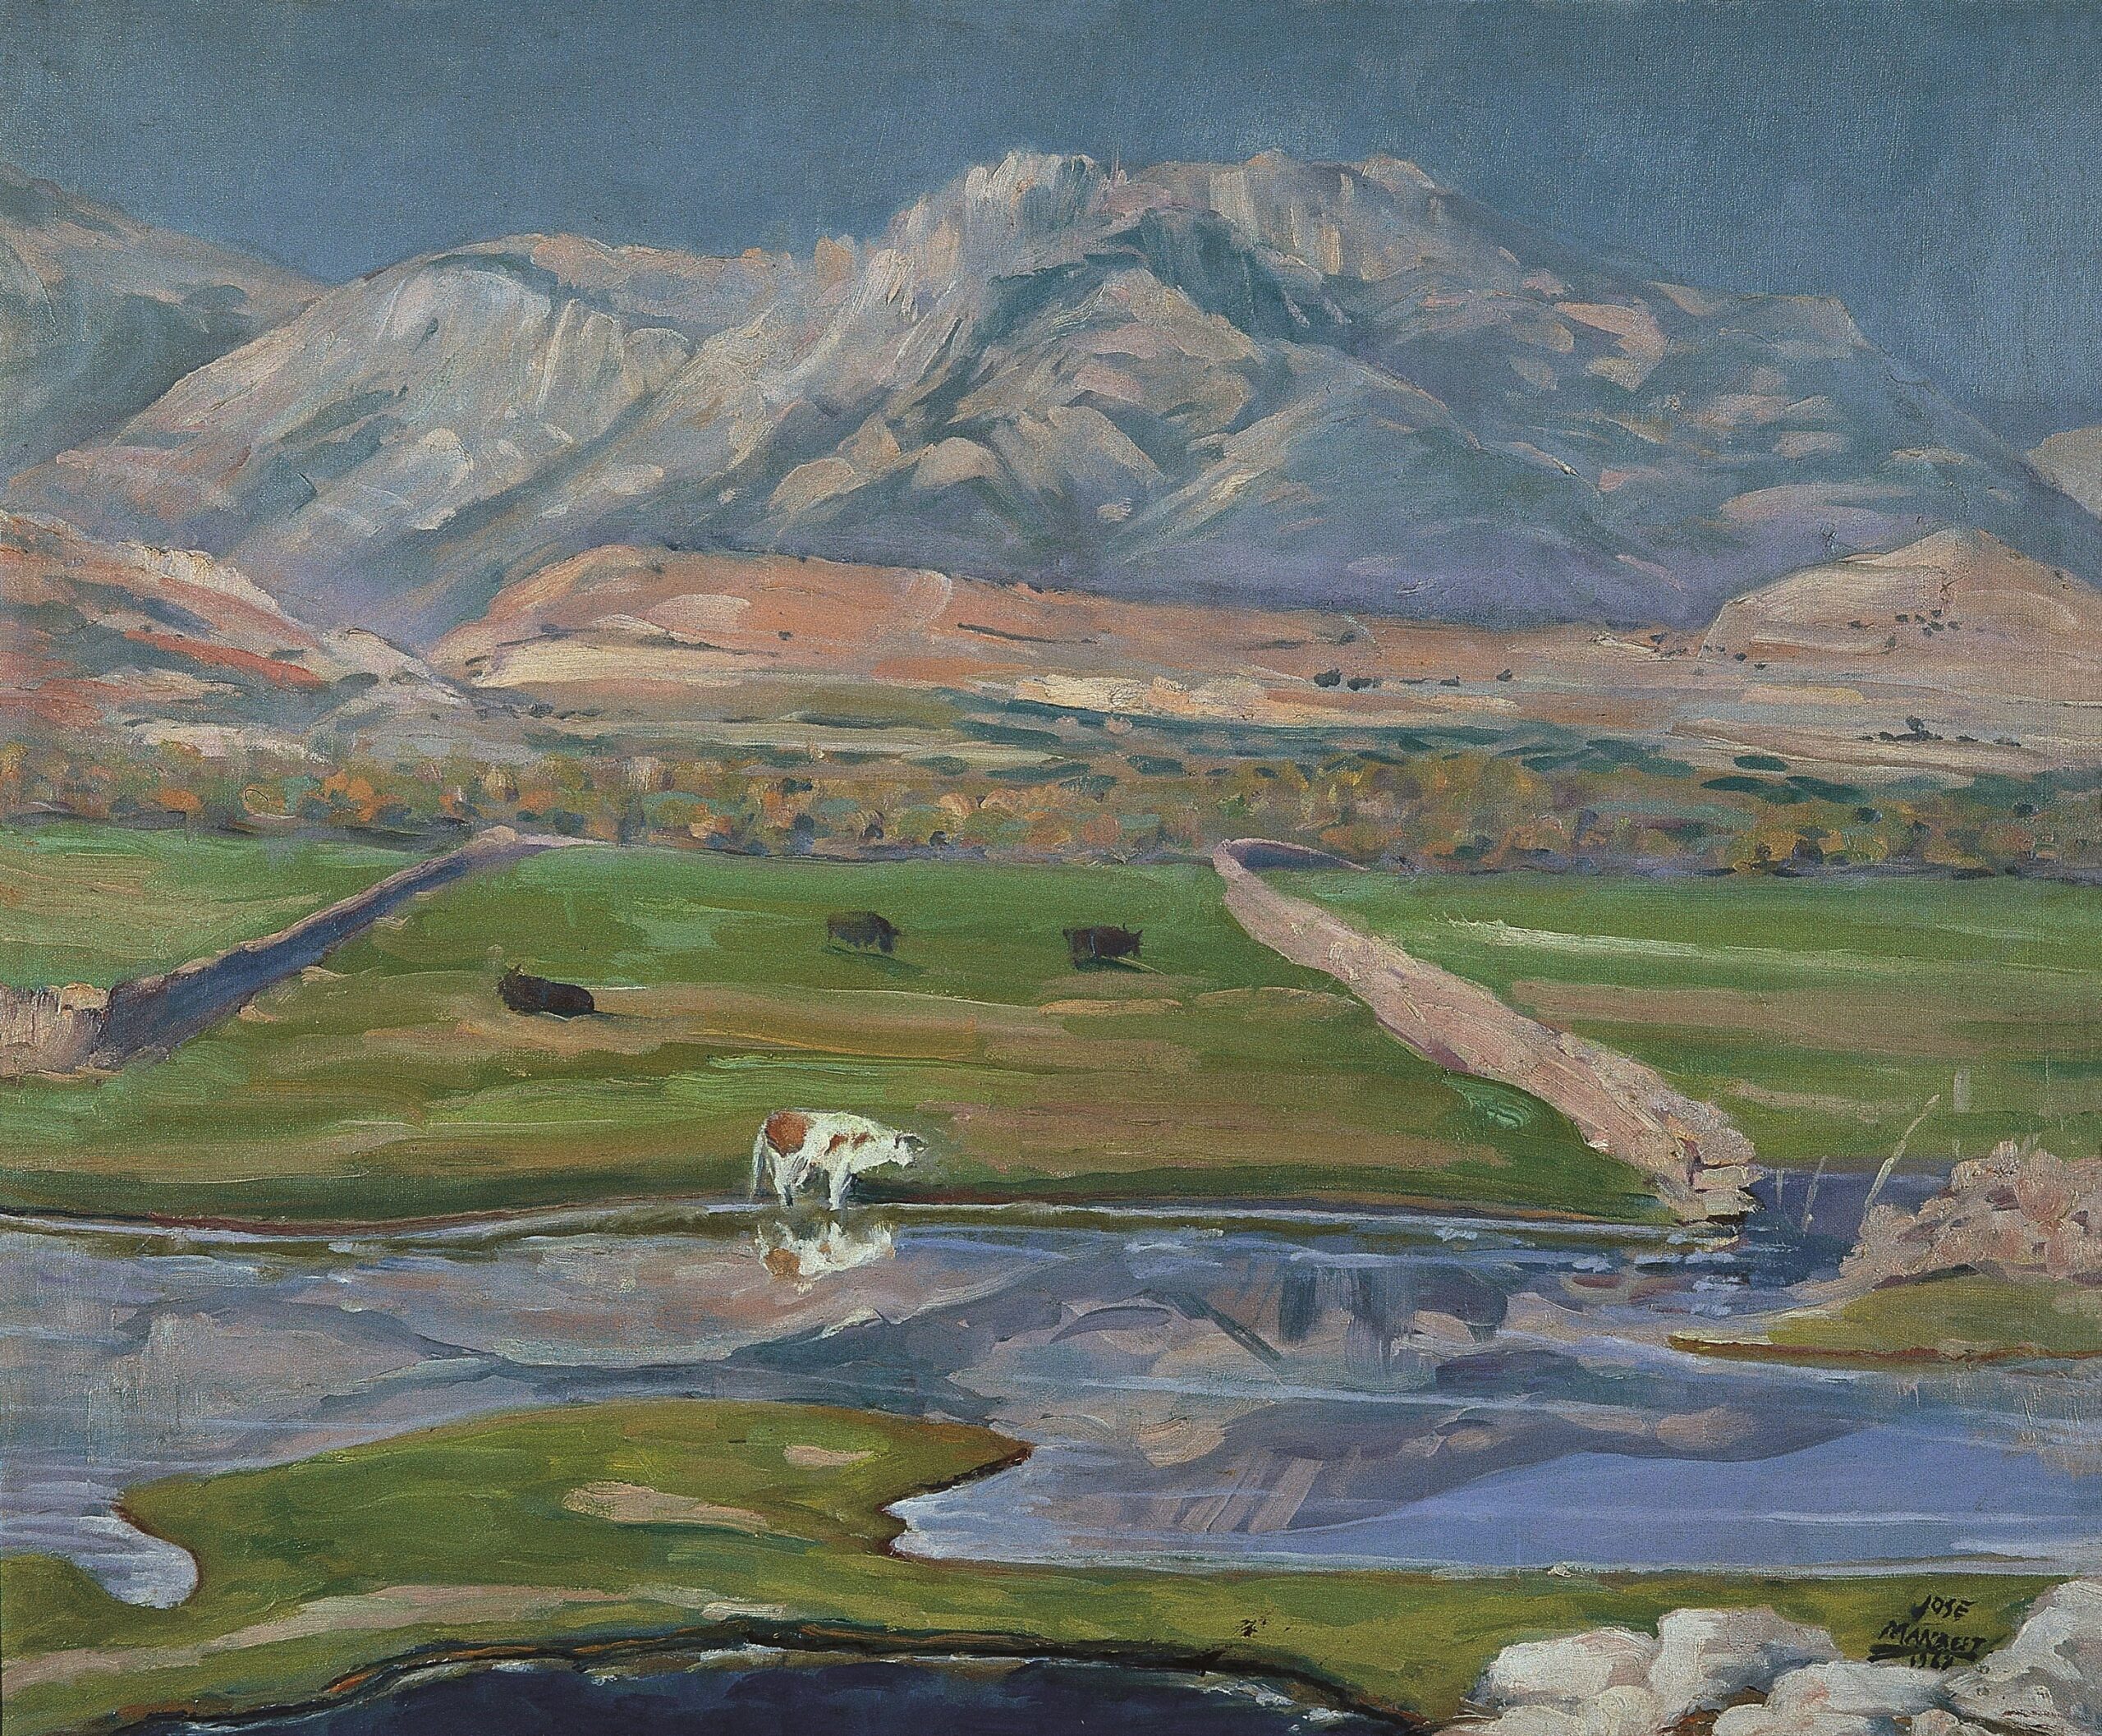 Pintura de José Manaut titulada Riachuelo con vacas y montañas al fondo, 1967. Óleo sobre lienzo.